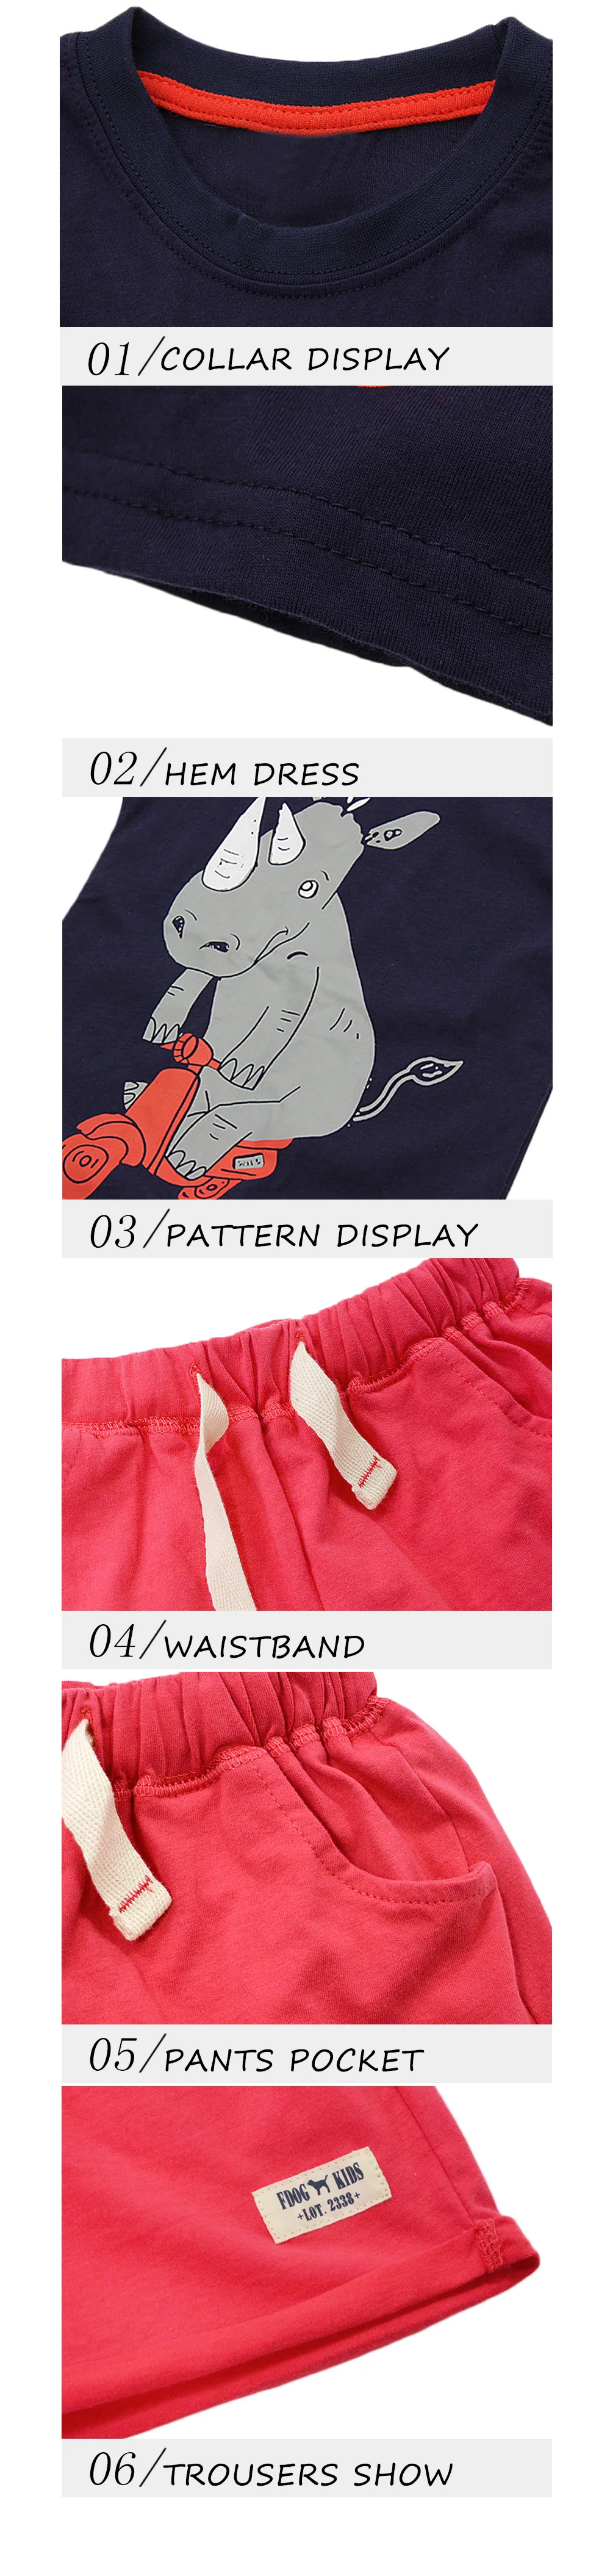 BINIDUCKLING/ г. летние комплекты одежды для мальчиков детские футболки без рукавов с рисунком носорога, штаны, шорты Детская одежда для малышей